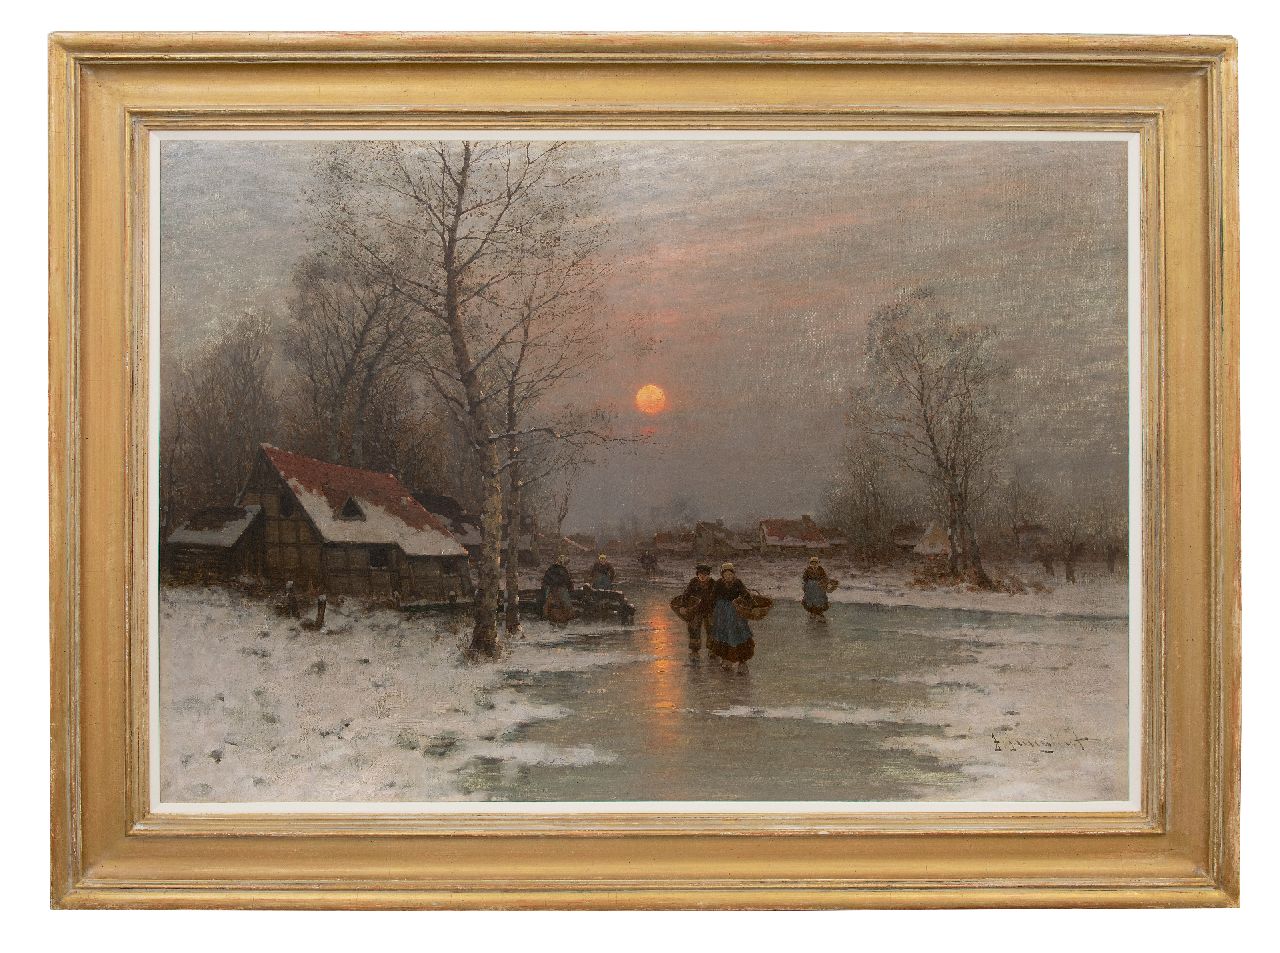 Jungblut J.  | Johann Jungblut | Schilderijen te koop aangeboden | Landvolk op een bevroren rivier, olieverf op doek 80,3 x 115,1 cm, gesigneerd rechtsonder